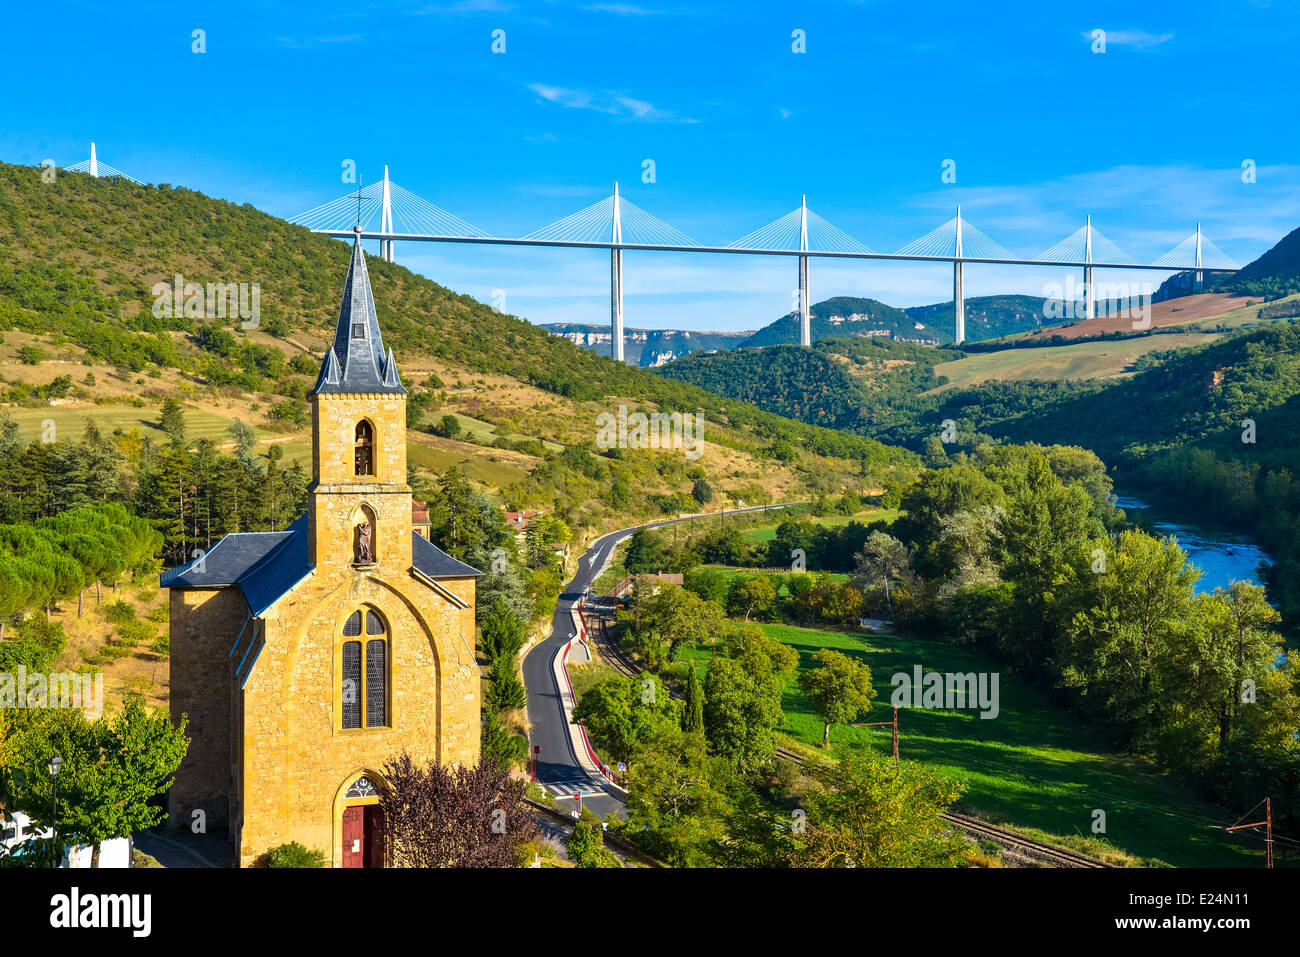 El famoso puente/viaducto sobre el río Aveyron cerca de Millau (Francia) visto desde el pueblo de Peyre Foto de stock